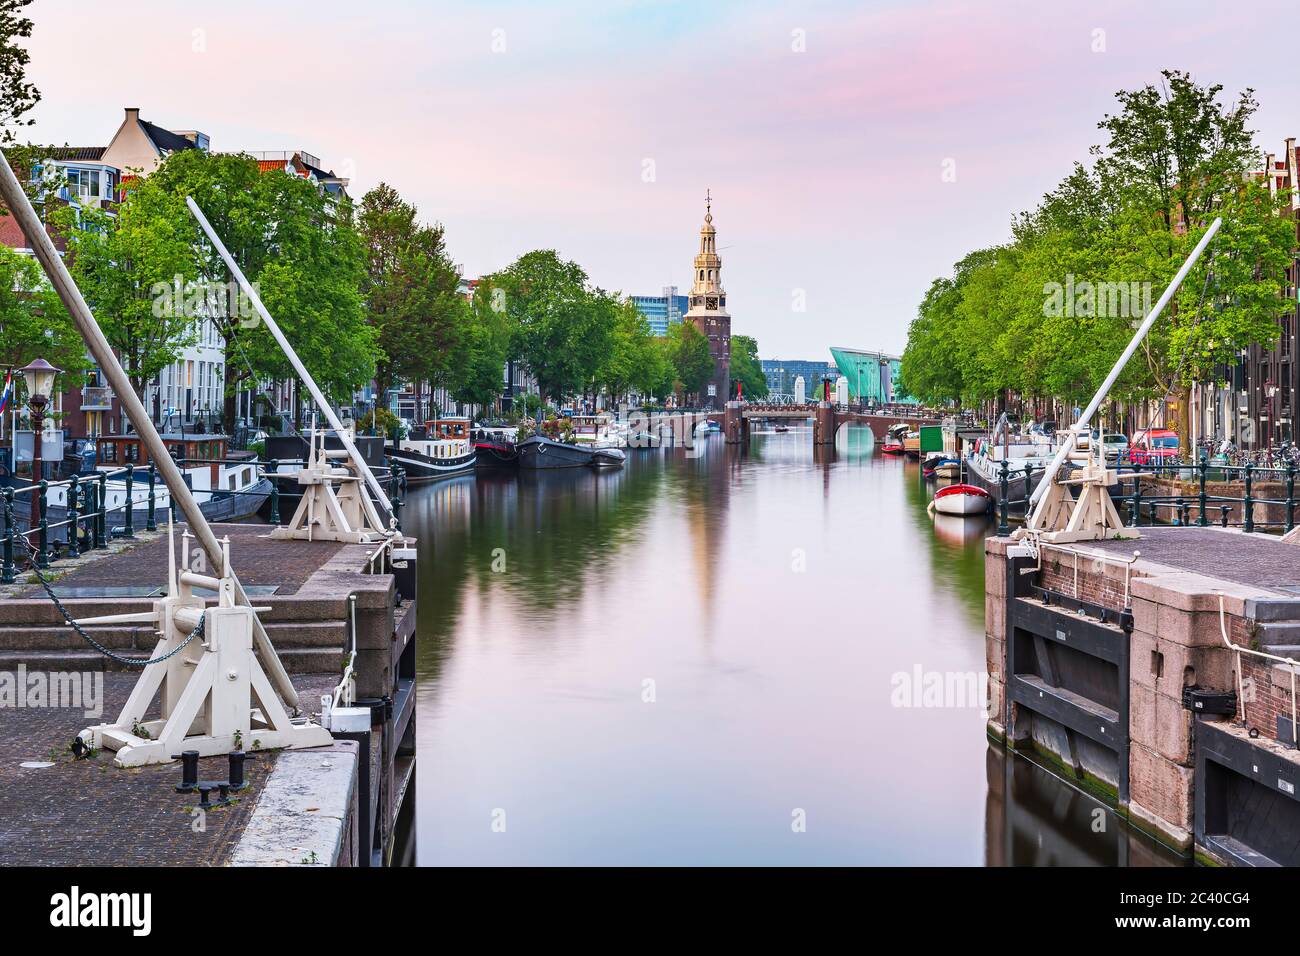 Amsterdam strade e canali durante il tramonto, stagione estiva. Sint Antoniesluis, meta turistica molto apprezzata dai turisti. Foto Stock